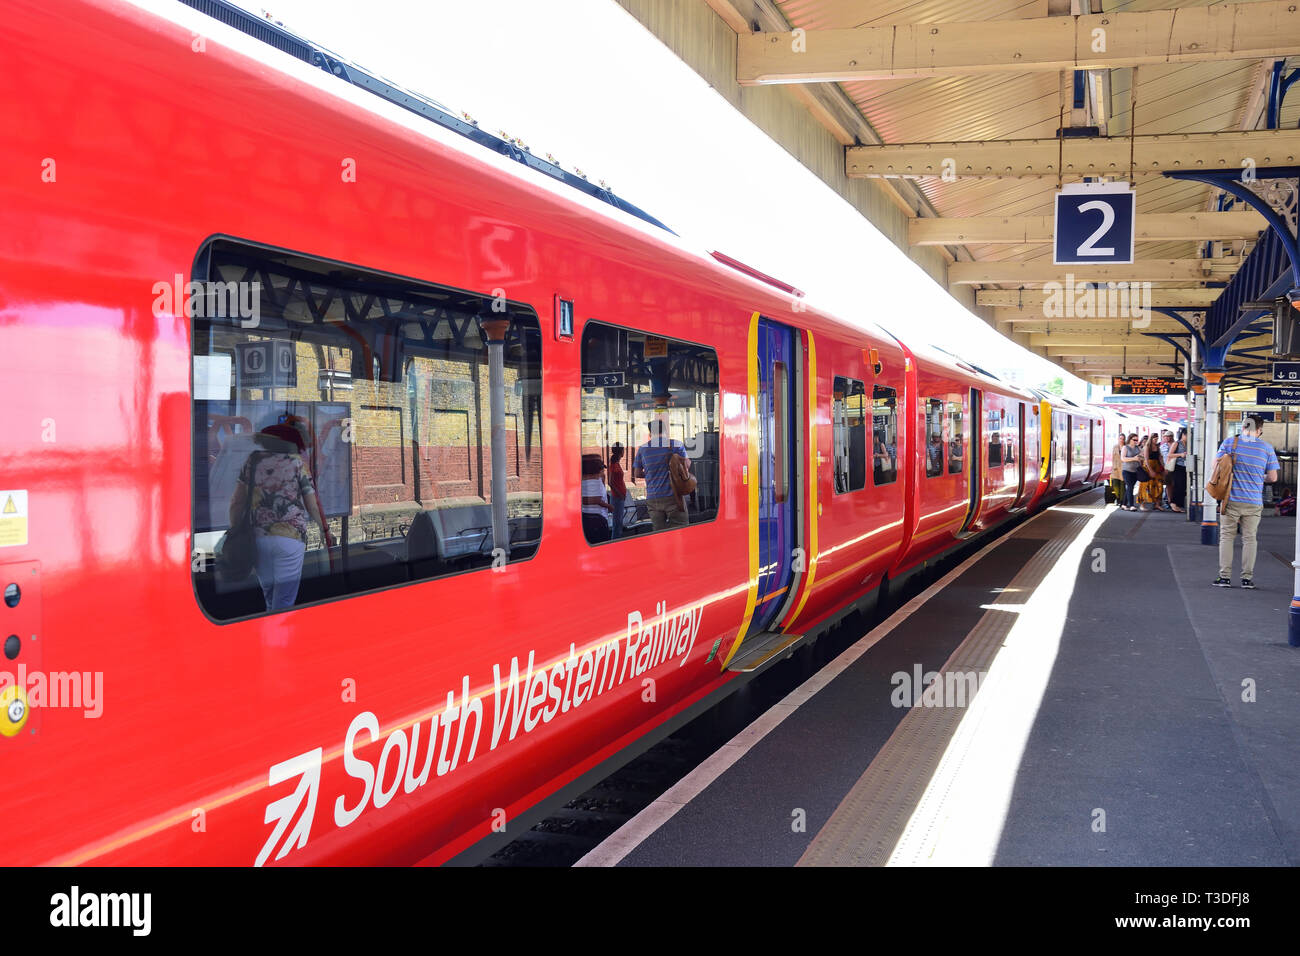 South Western Railway train sur la plate-forme à la gare de Vauxhall, Vauxhall, London Borough of Lambeth, Greater London, Angleterre, Royaume-Uni Banque D'Images